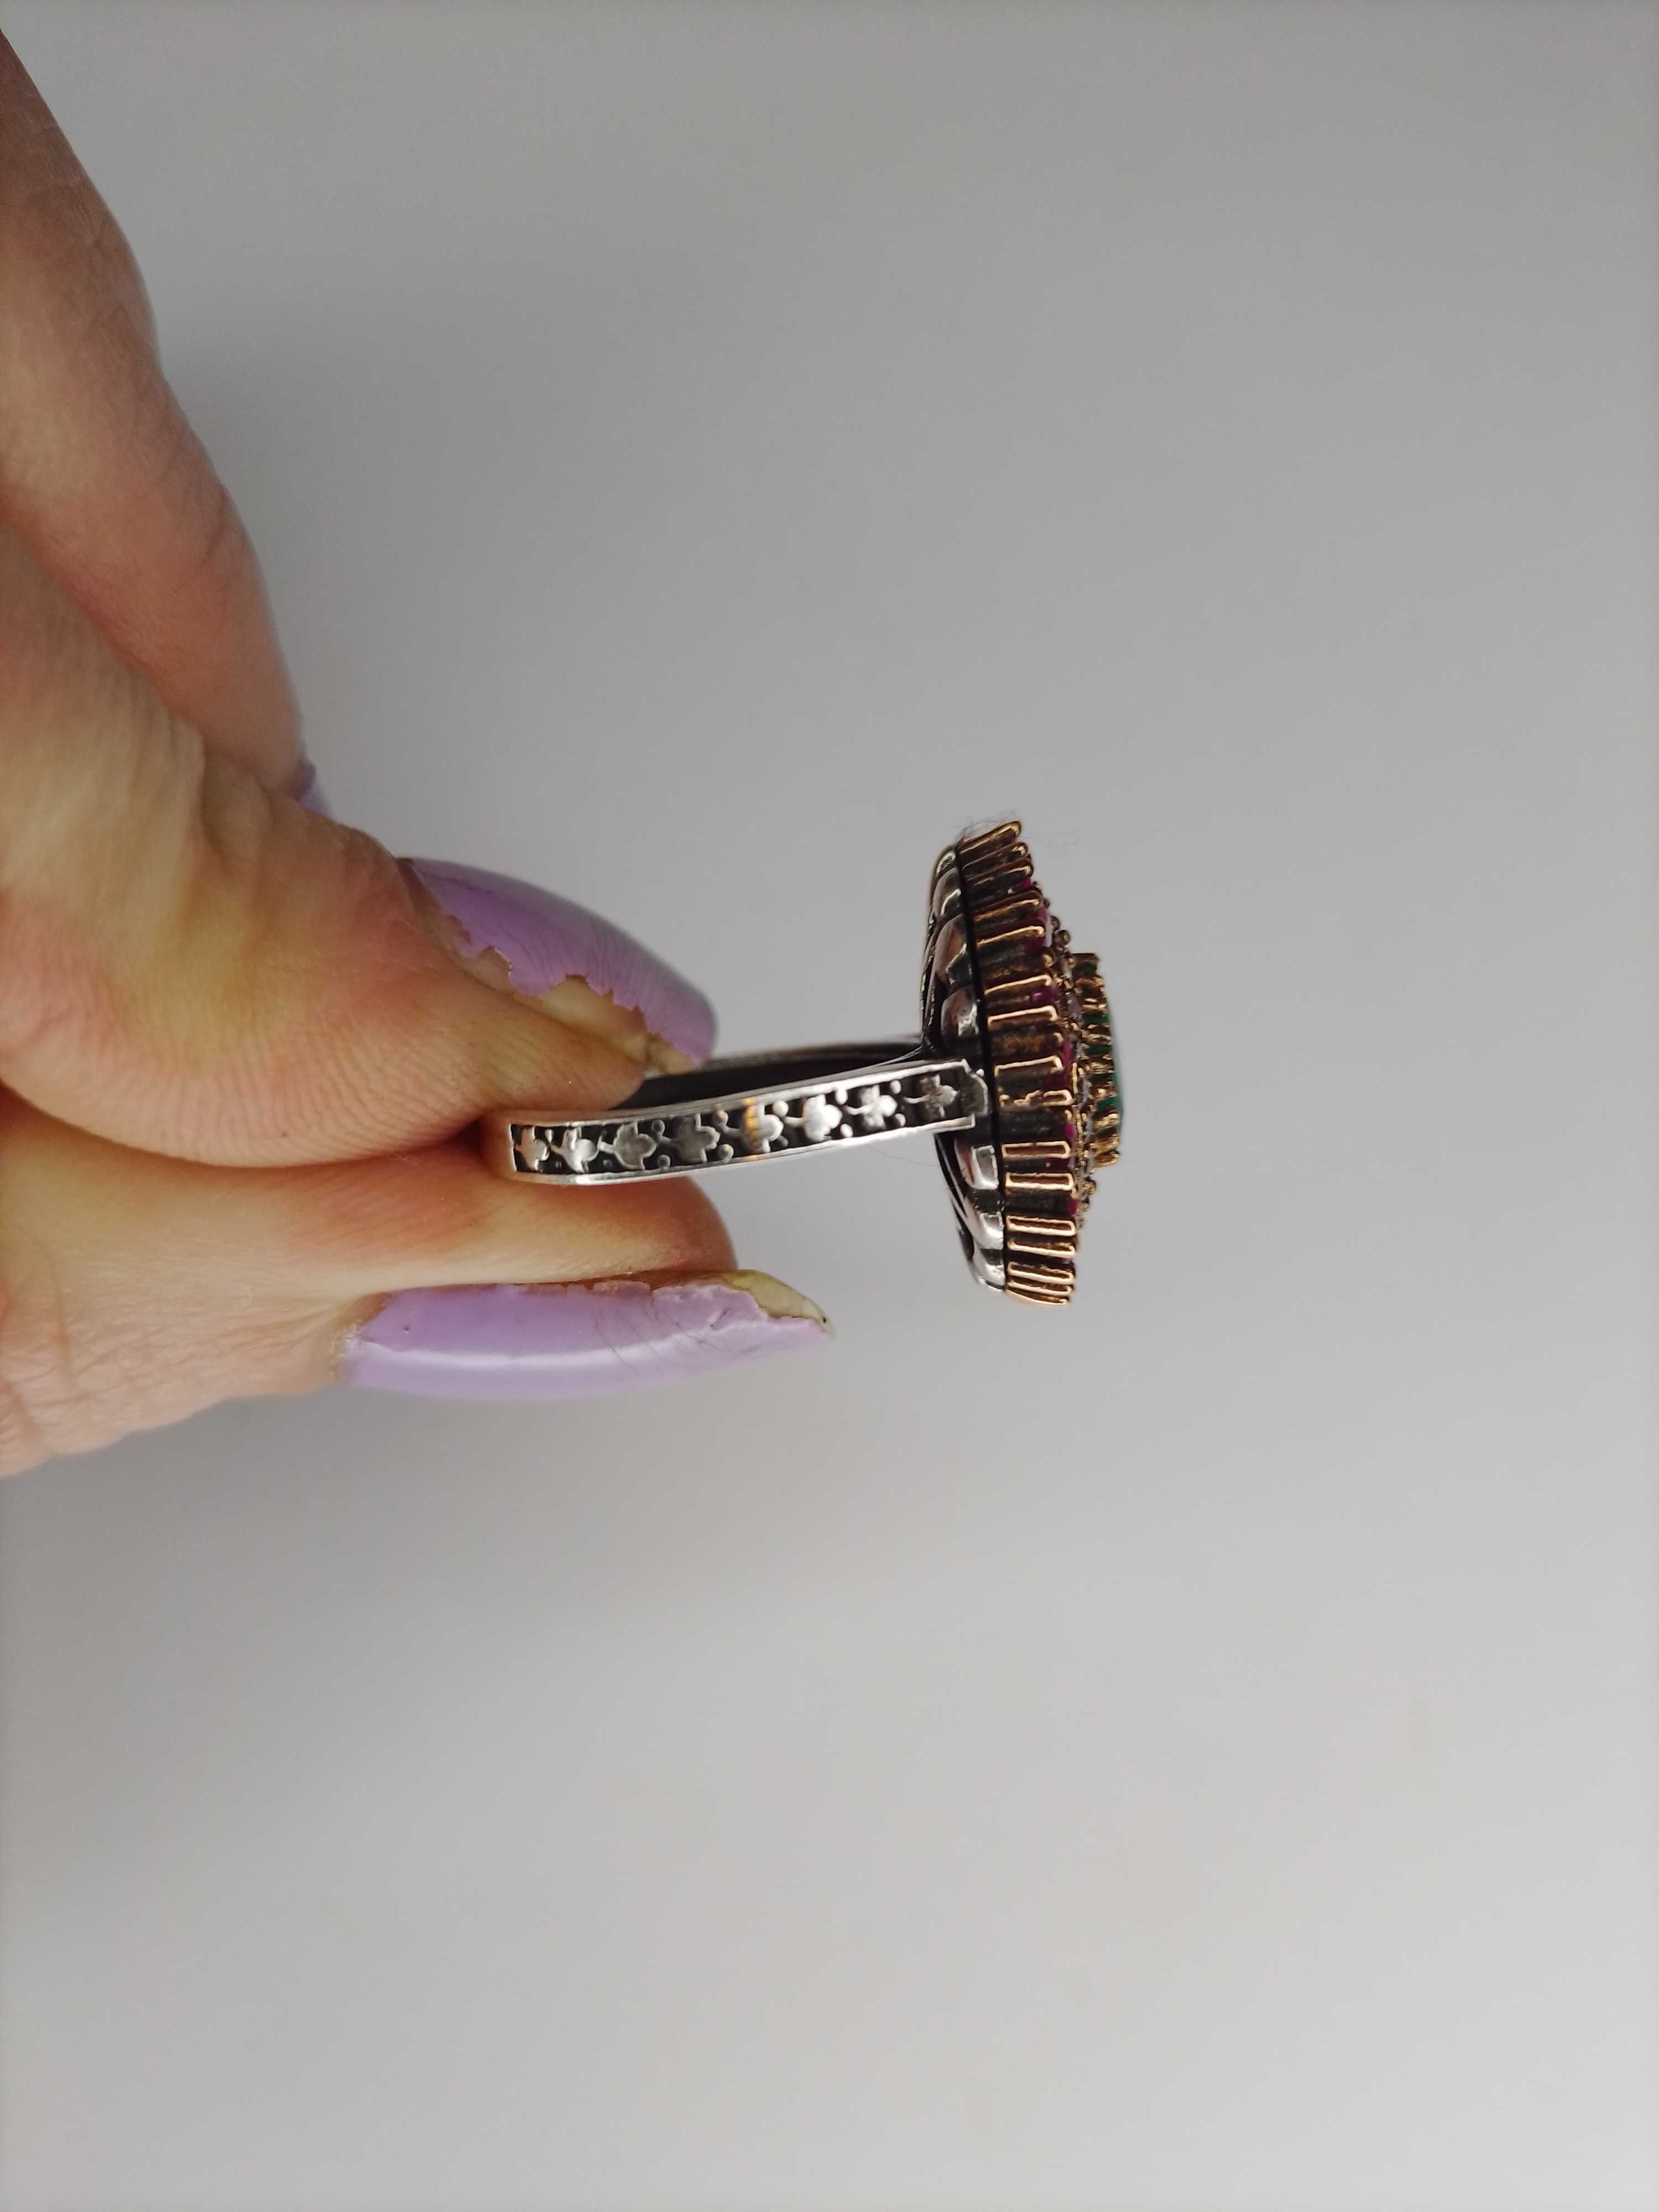 Stary srebrny pierścionek z rubinami i szmaragdem ręcznie wykonany